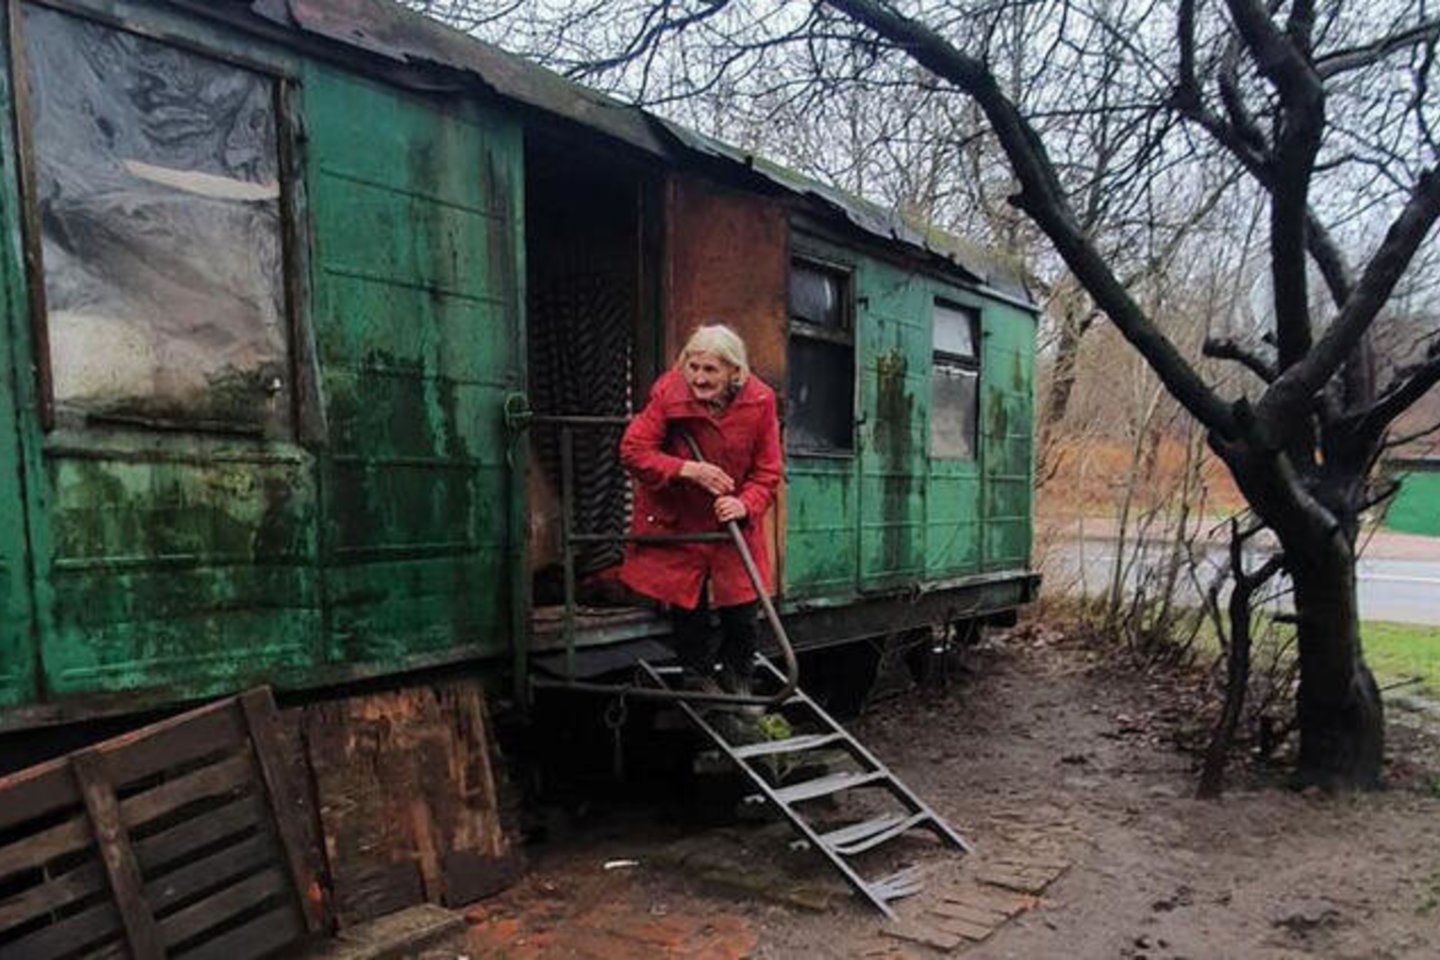  SITUACIJA. Vieniša 90 metų senolė jau daug metų gyvena vagonėlyje Joniškės g. antisanitarinėmis sąlygomis ir niekas neranda būdų pasirūpinti jos gyvenimo kokybe.<br> M.Andrijanovo nuotr. 